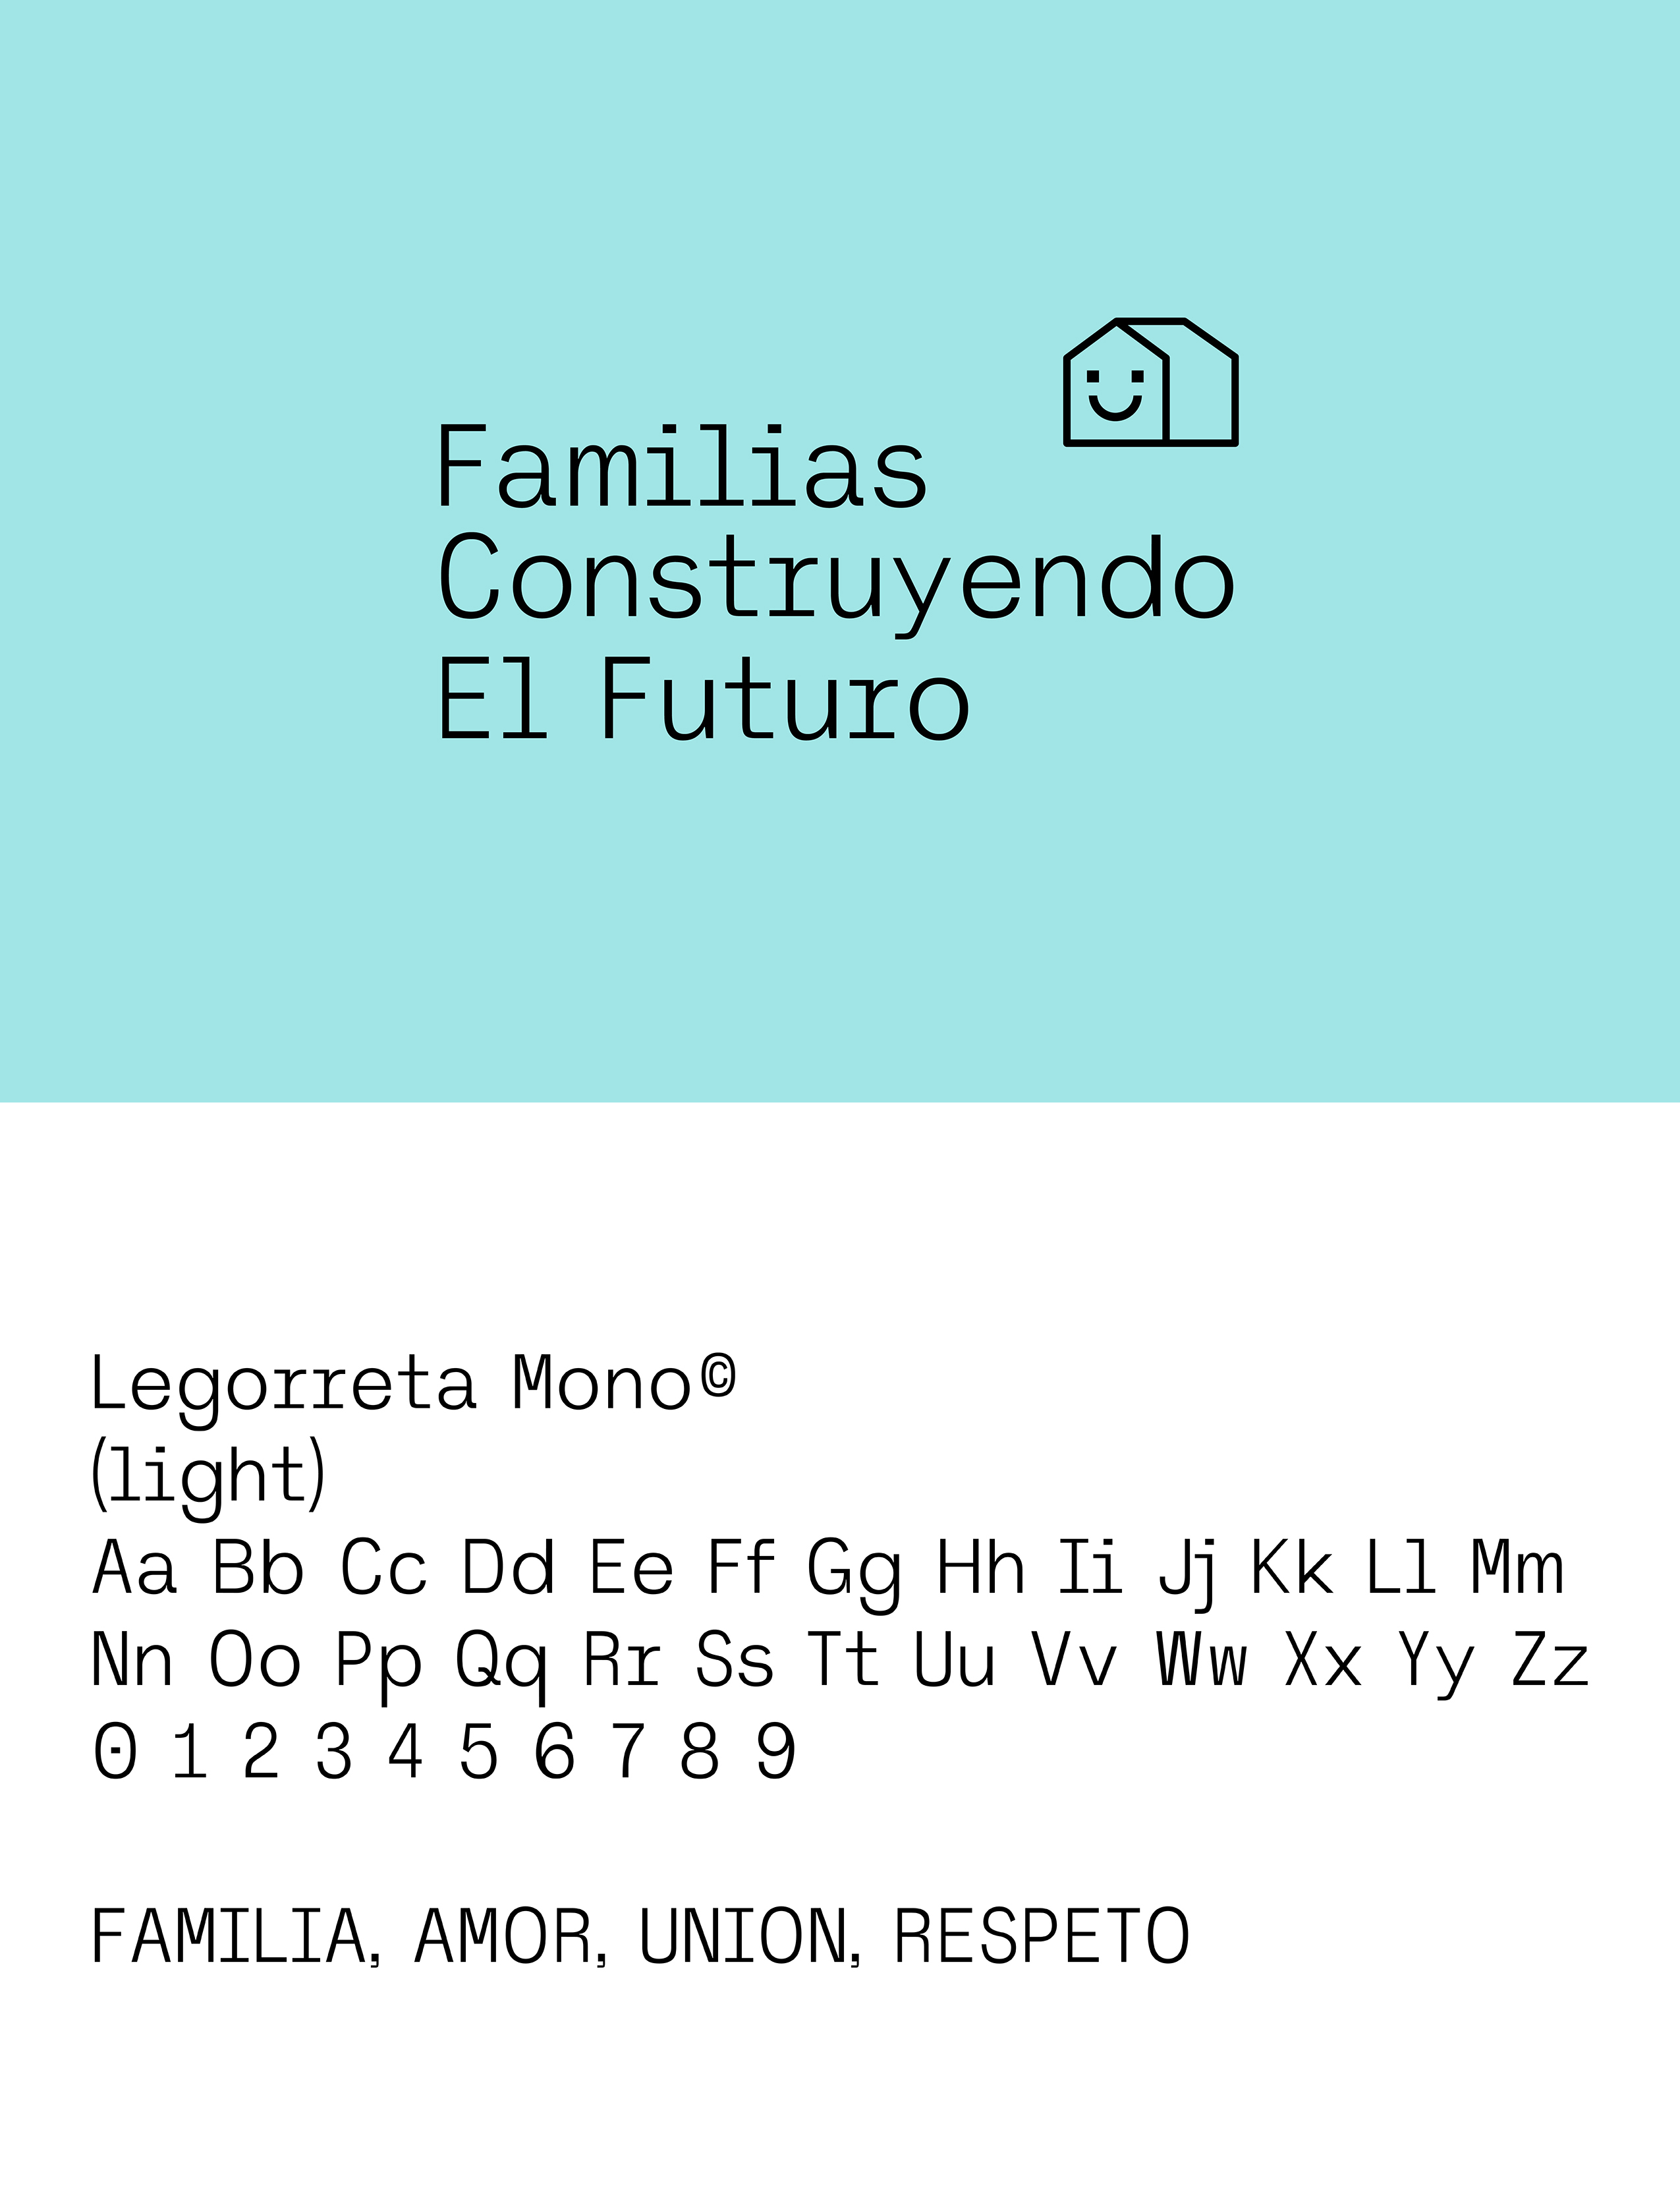 Identidad “Familias construyendo el futuro” by Isabella Santillana Jaspersen, Sofía Alessandra Adame Treviño - Creative Work